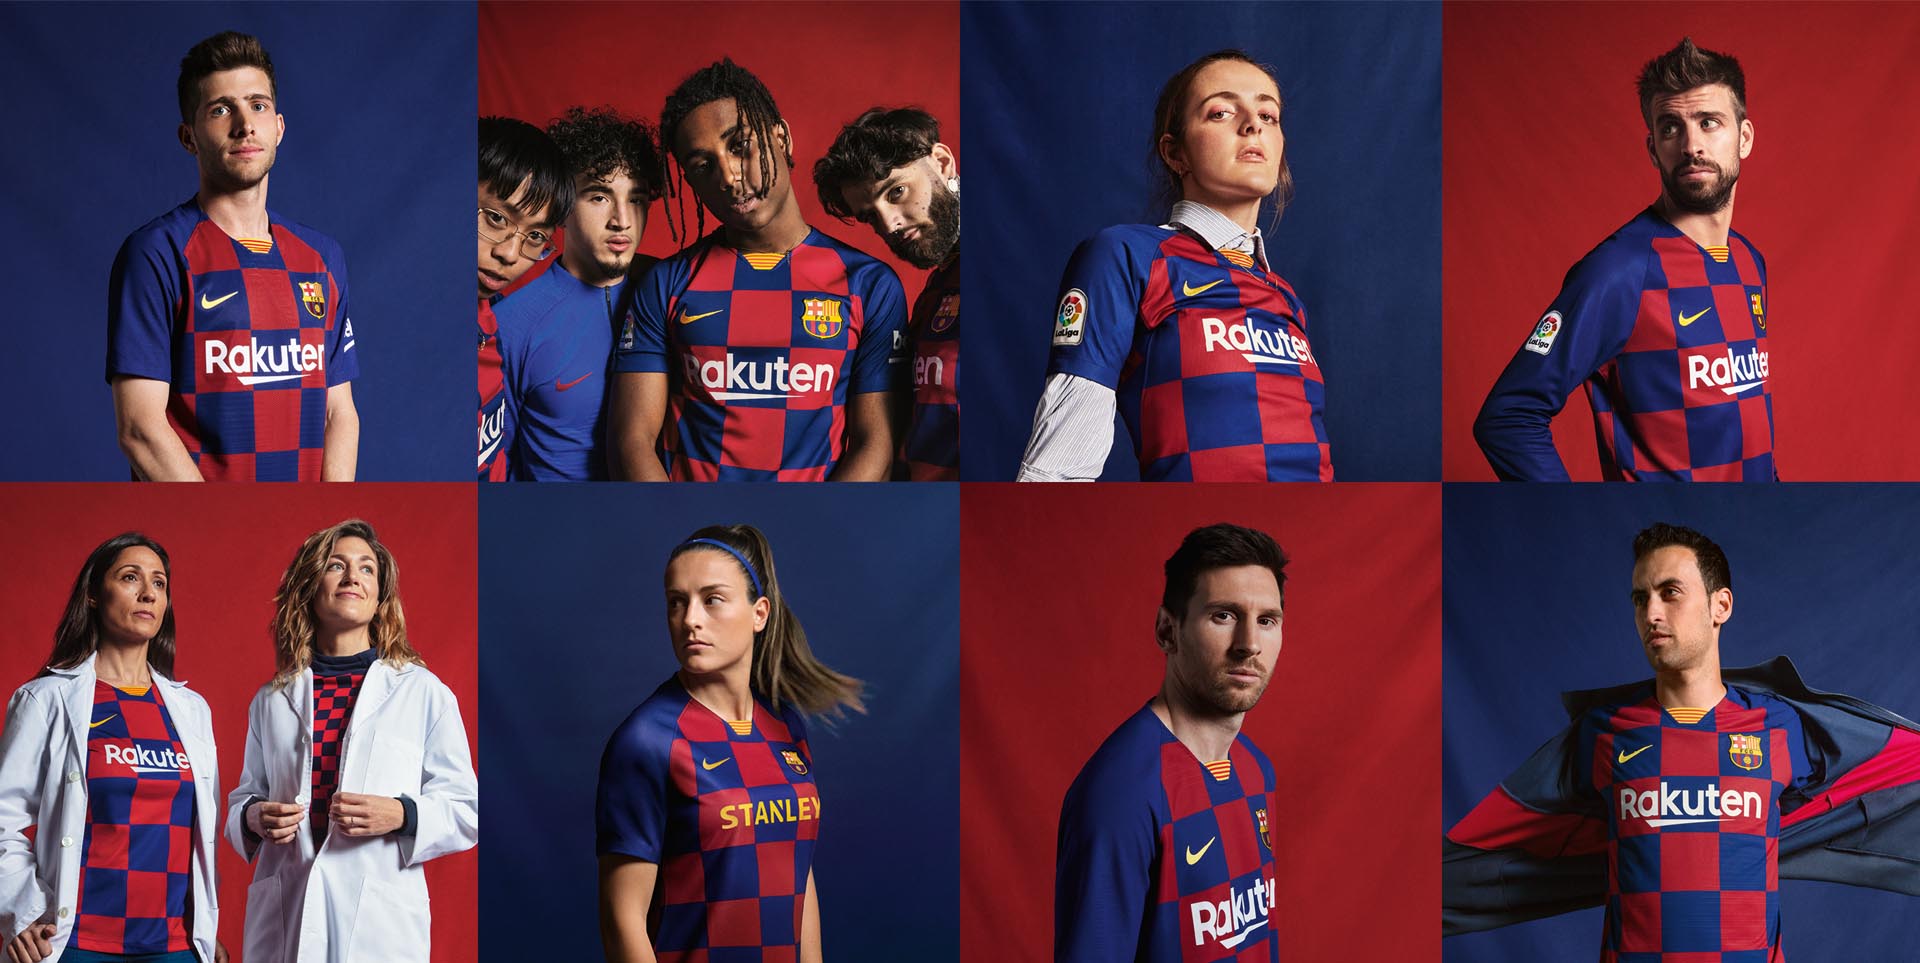 premie Mus Schrijft een rapport Barcelona thuisshirt 2019-2020 - Voetbalshirts.com